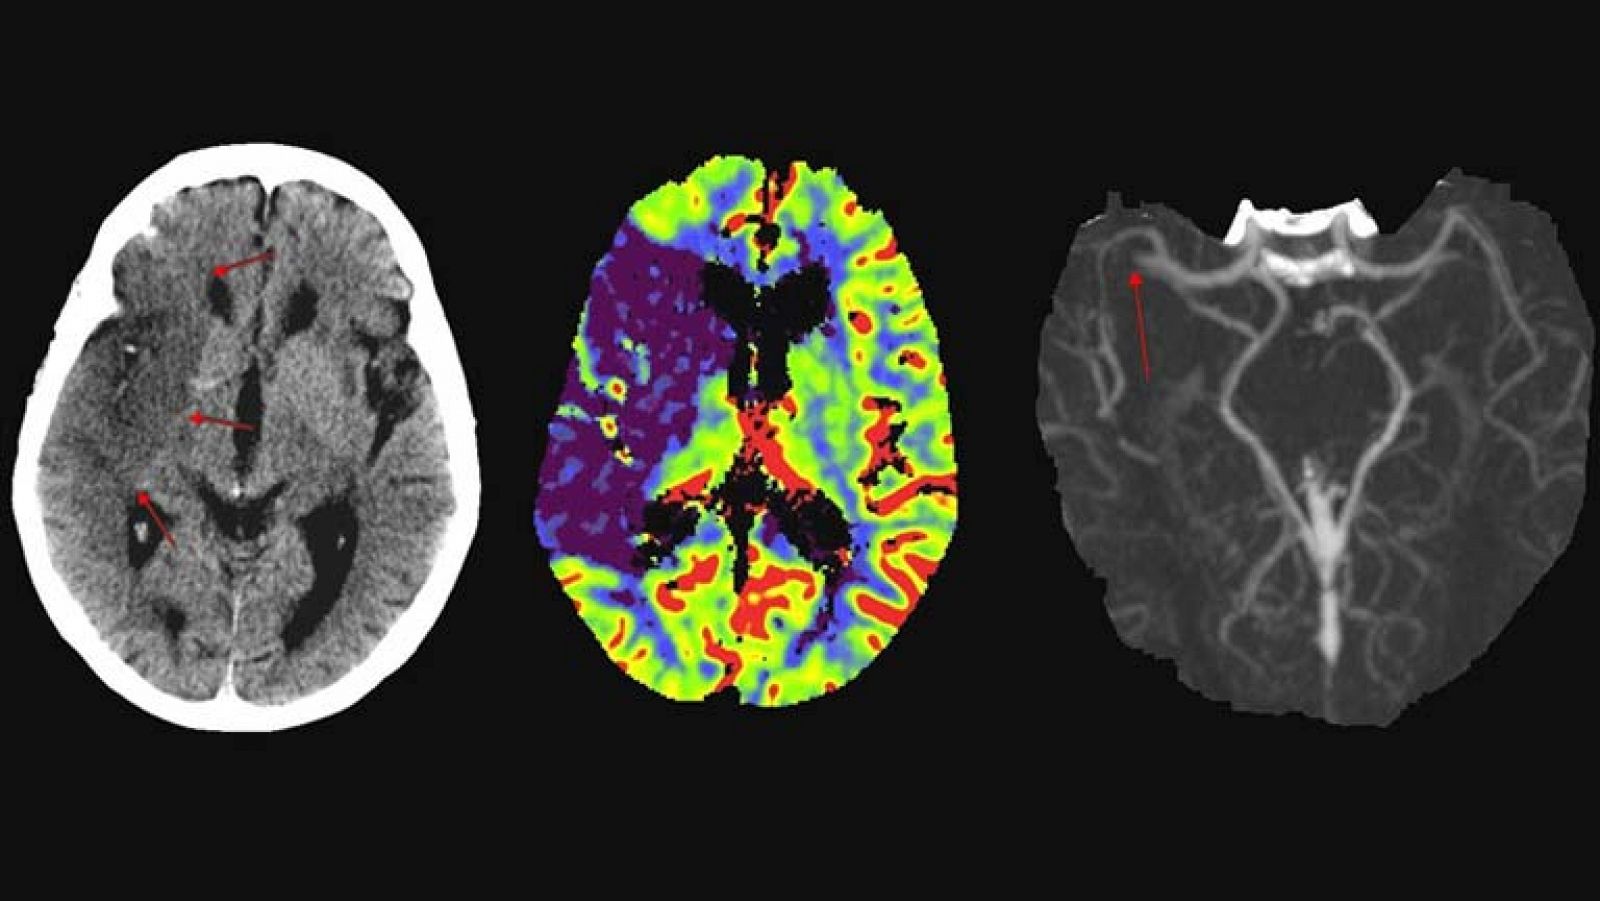 Imágenes de las consecuencias sobre el cerebro de distintos accidentes cerebrovasculares tomadas con Resonancia Magnética.